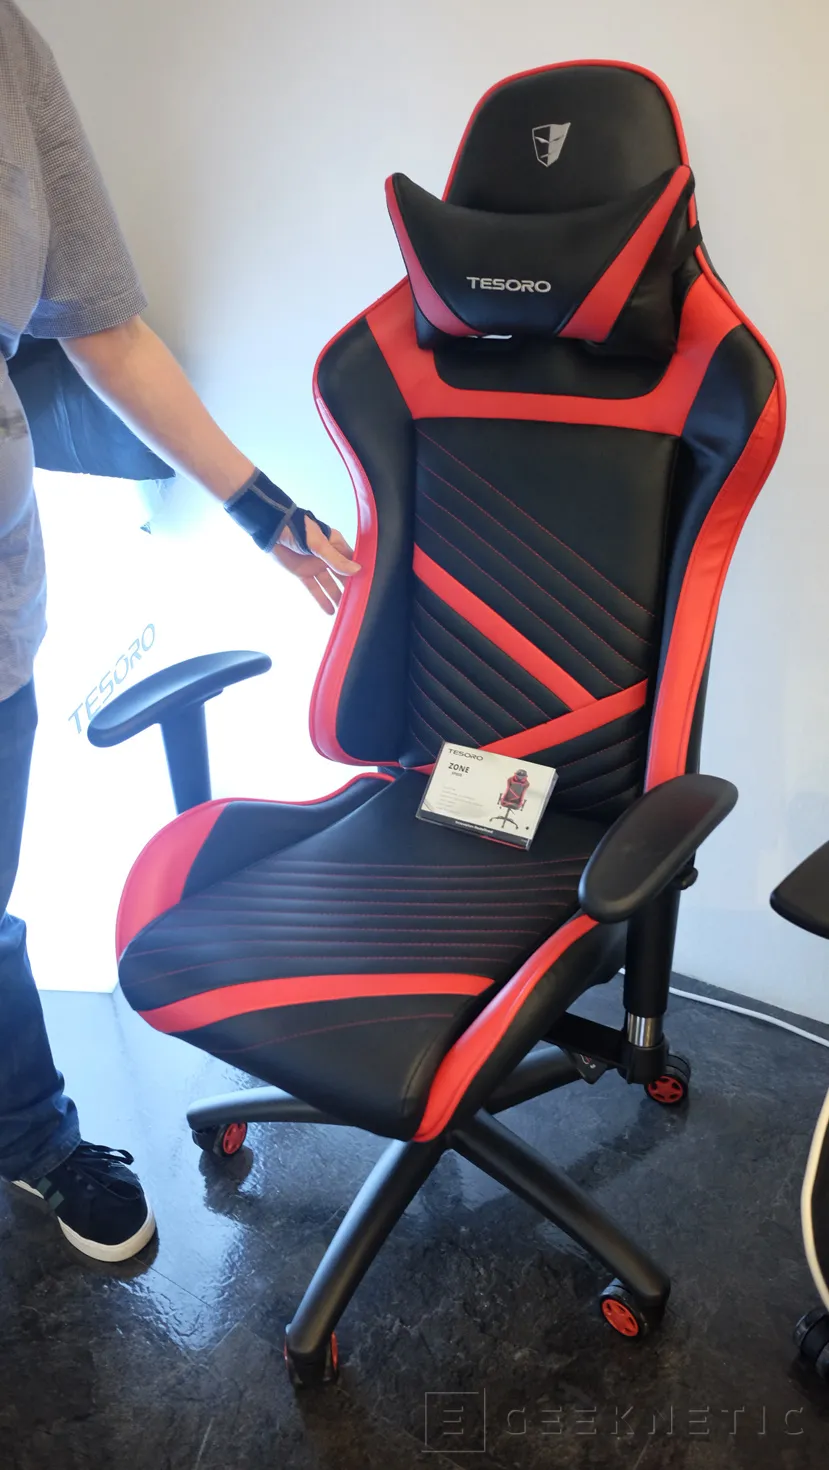 Geeknetic Tesoro muestra sillas gaming y alfombrillas RGB con carga inalámbrica en el Computex 1